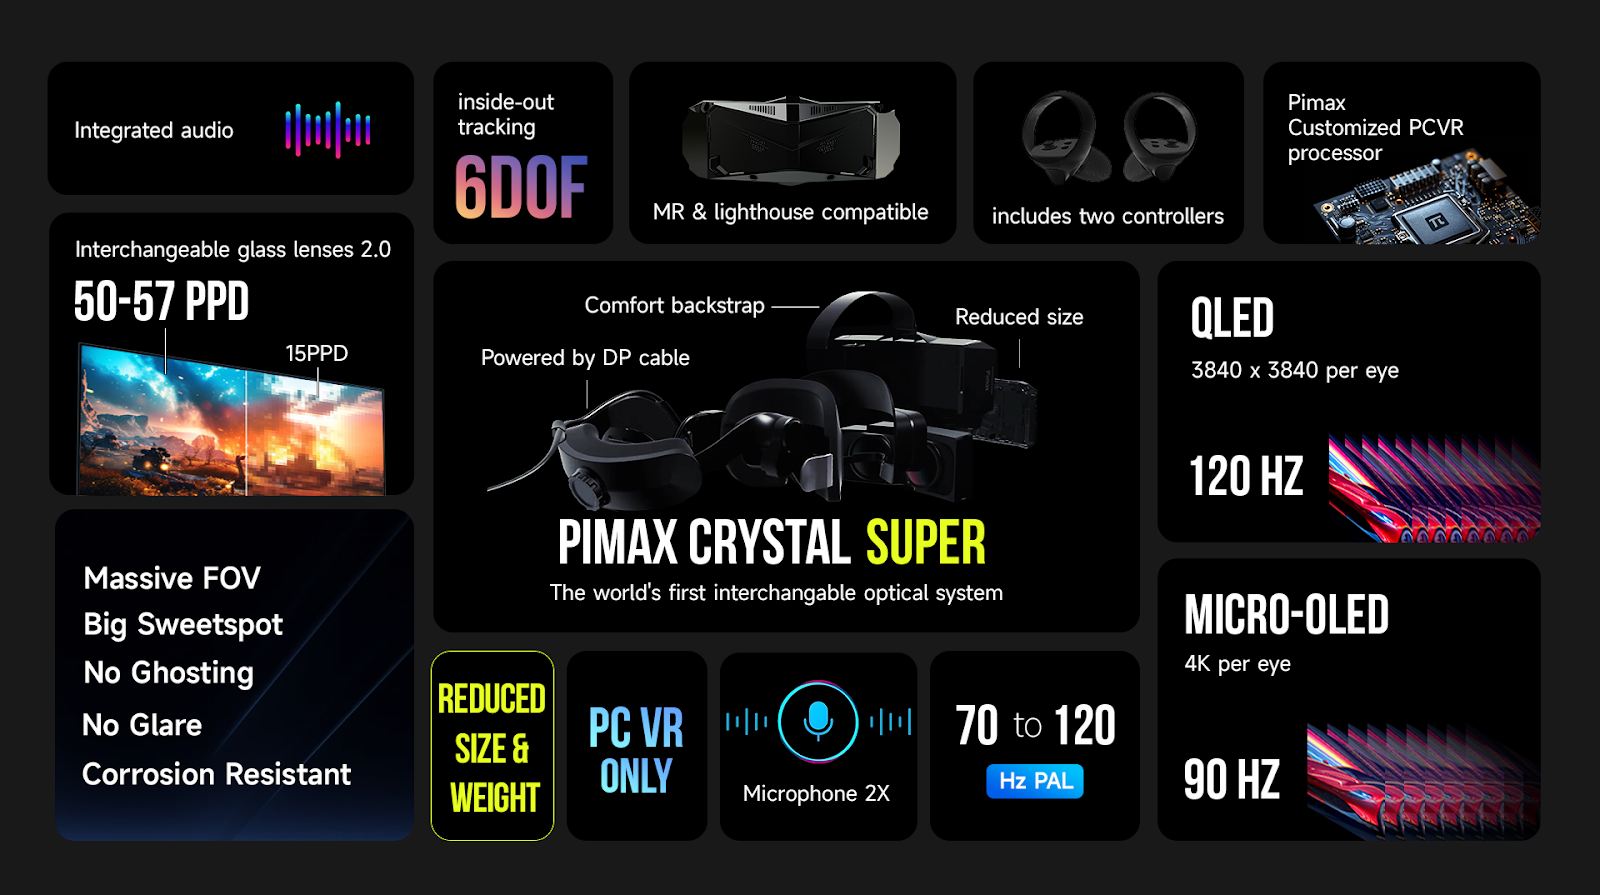 Pimax Crystal Super details